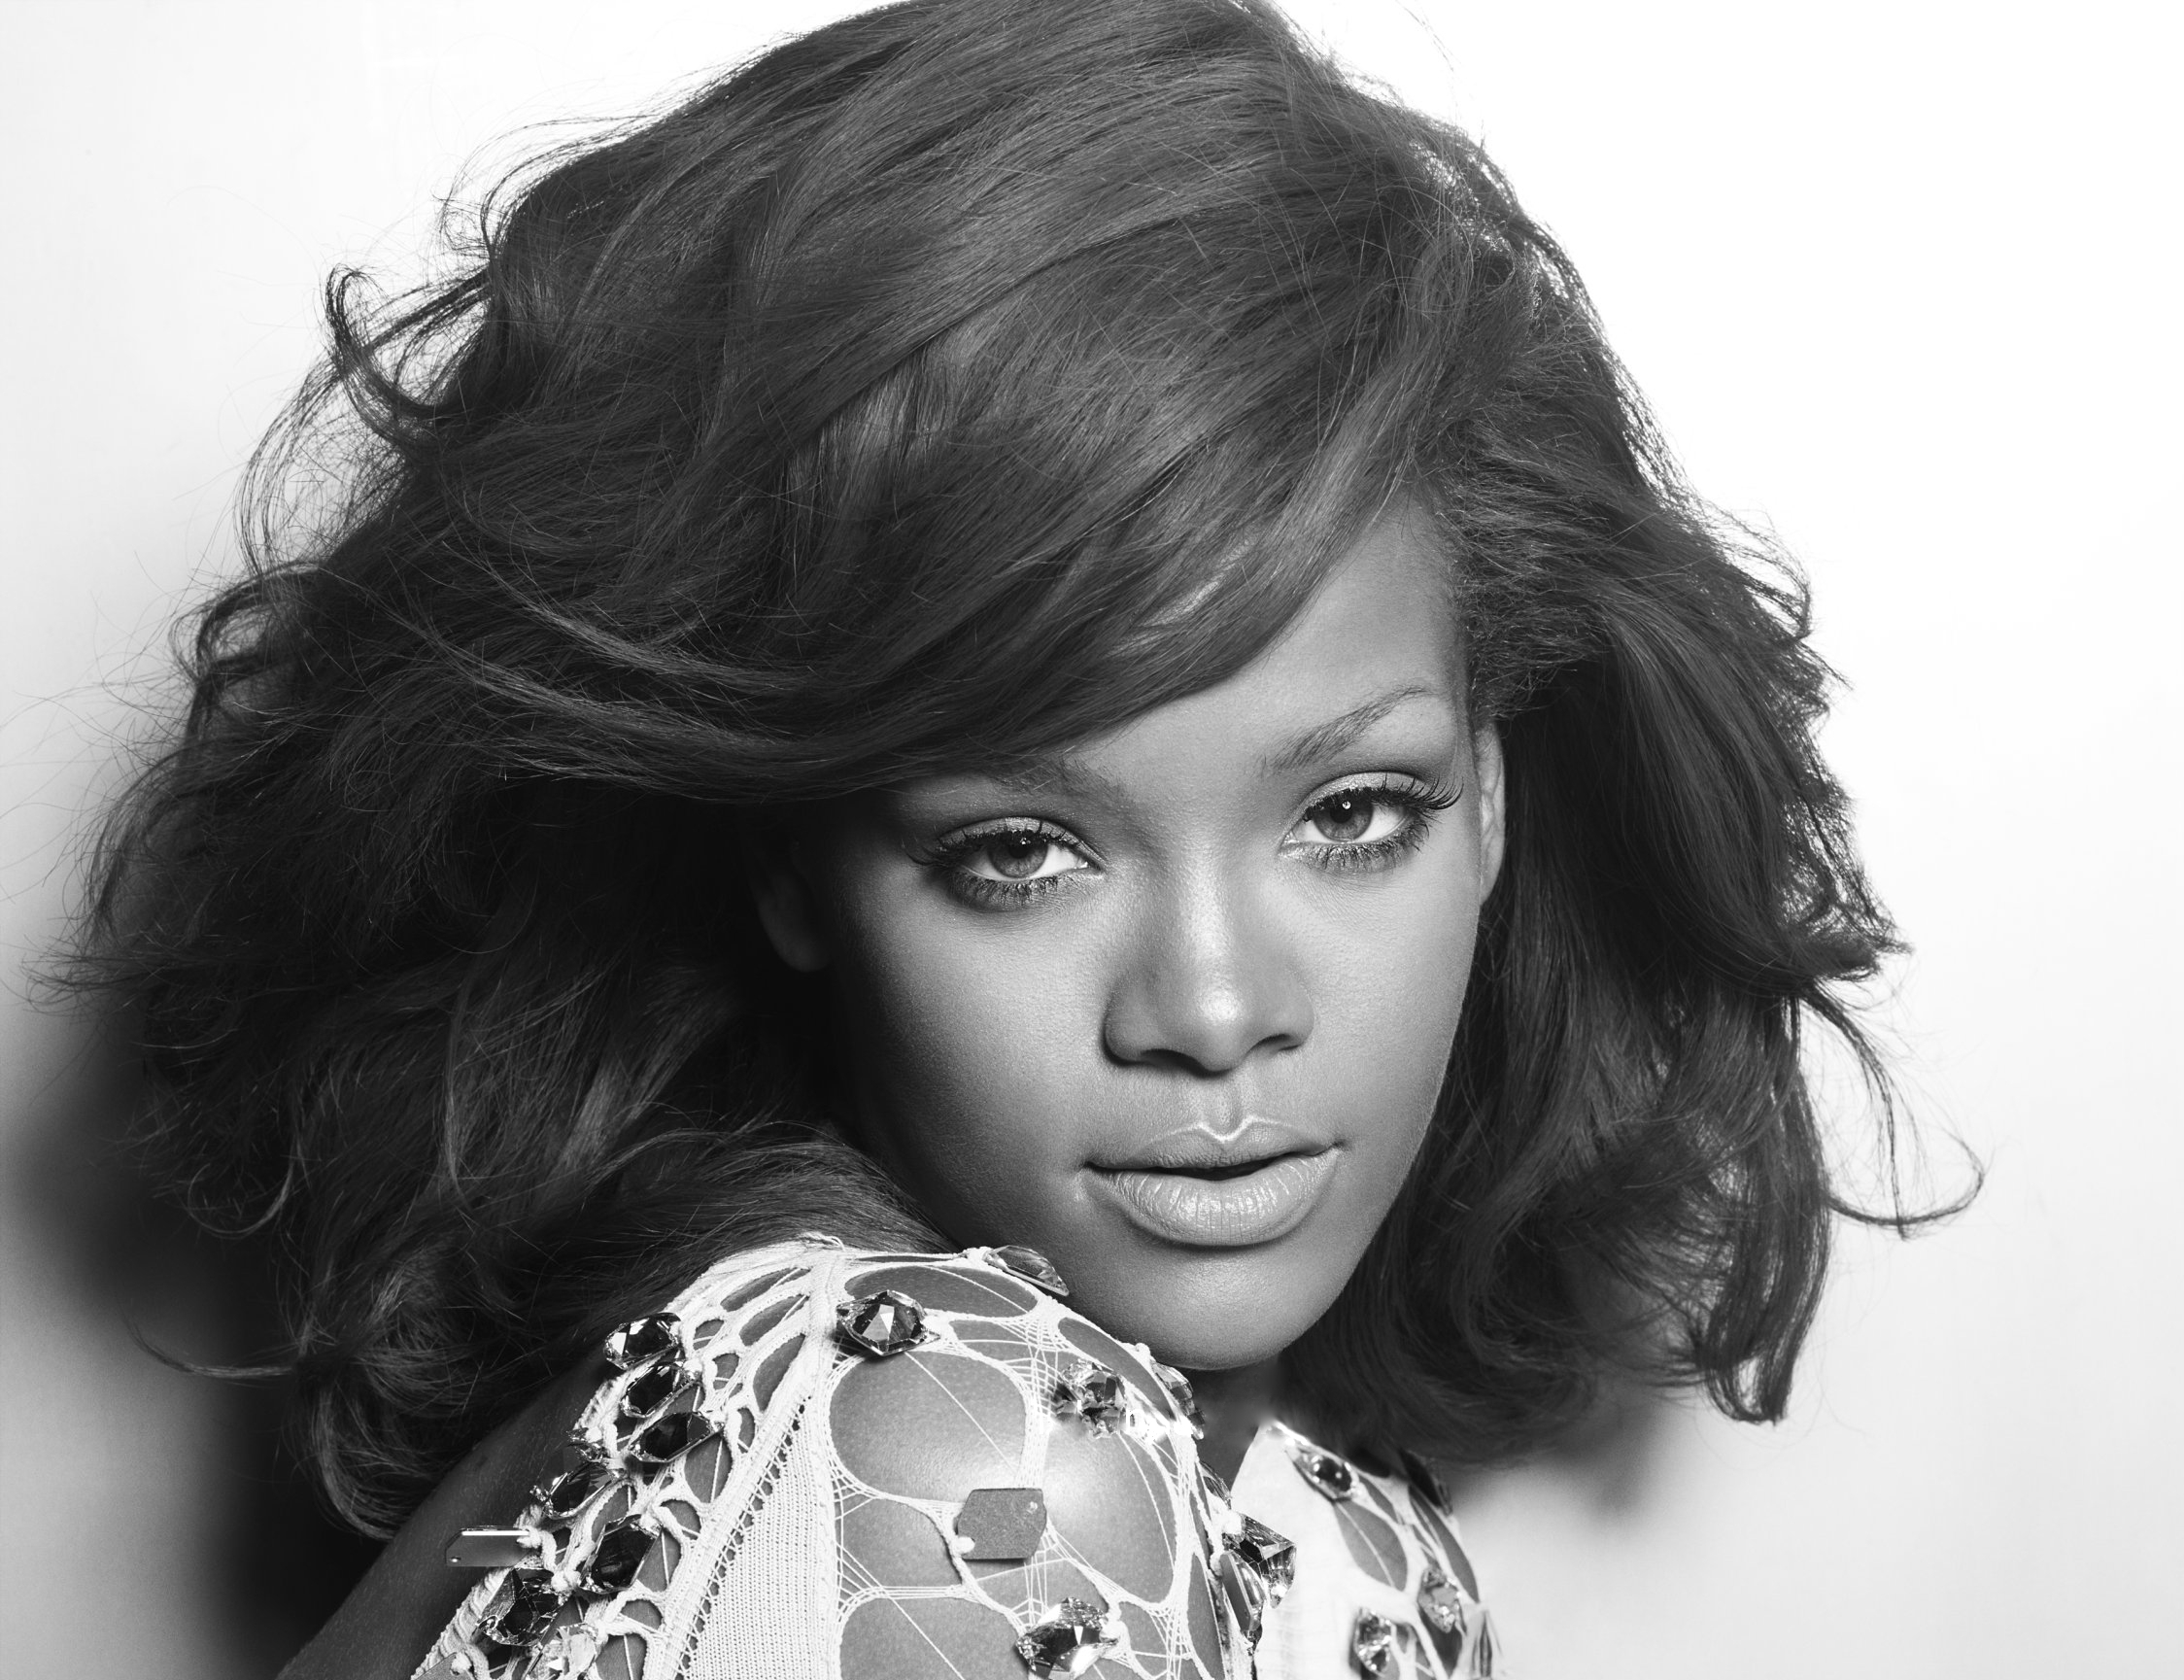 Rihanna Computer Wallpapers, Desktop Backgrounds | 2248x1729 | ID:427097